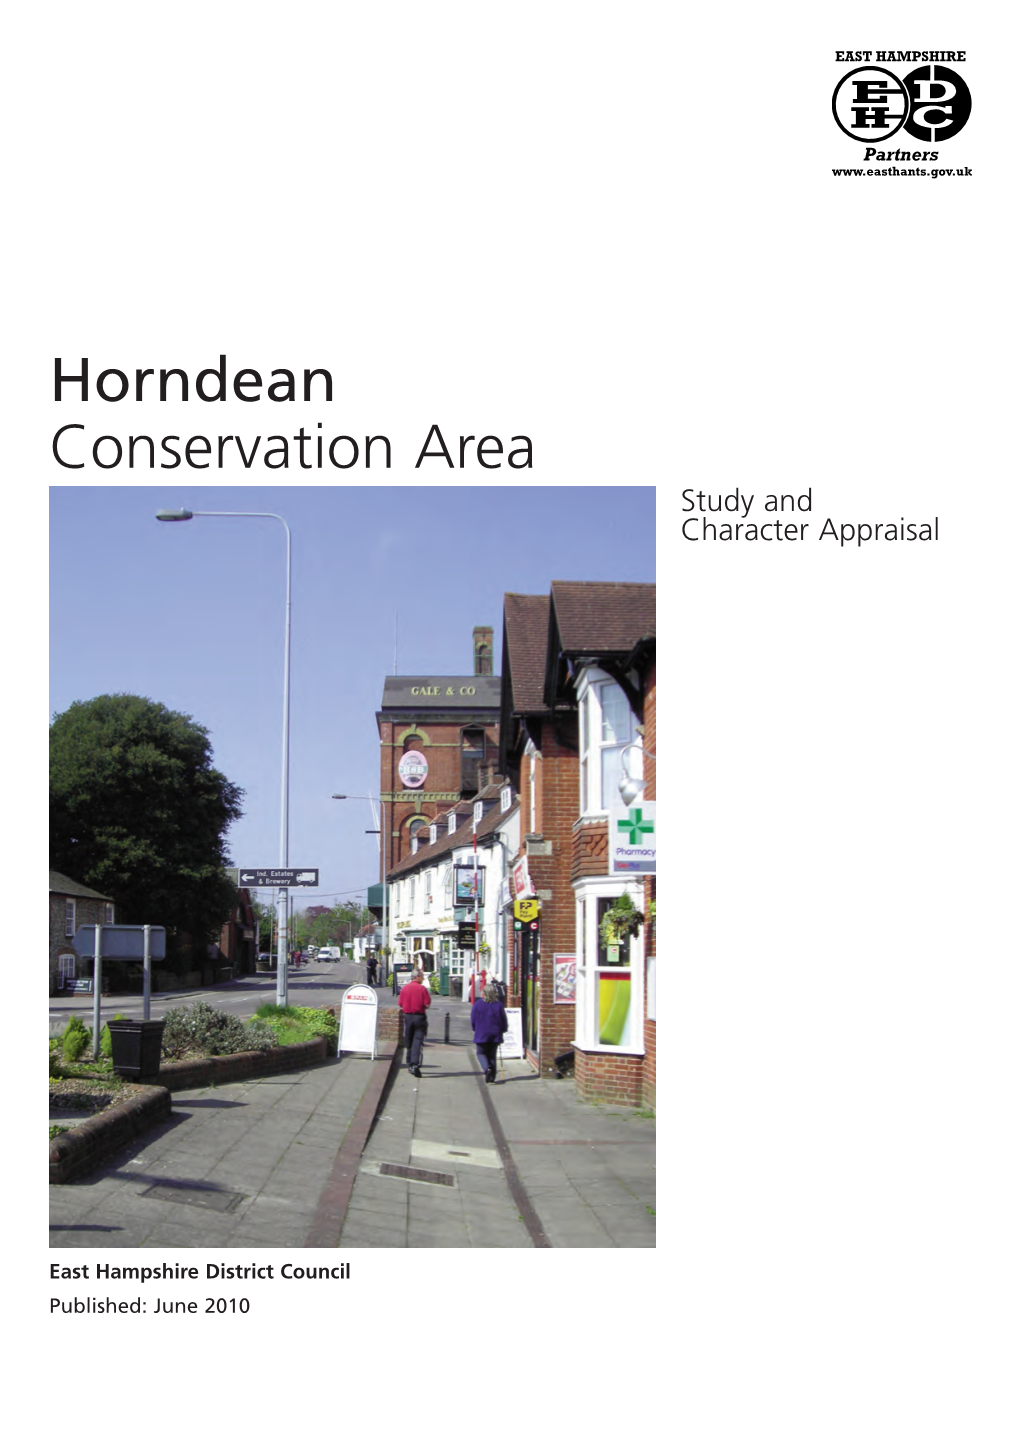 Horndean Character Appraisal